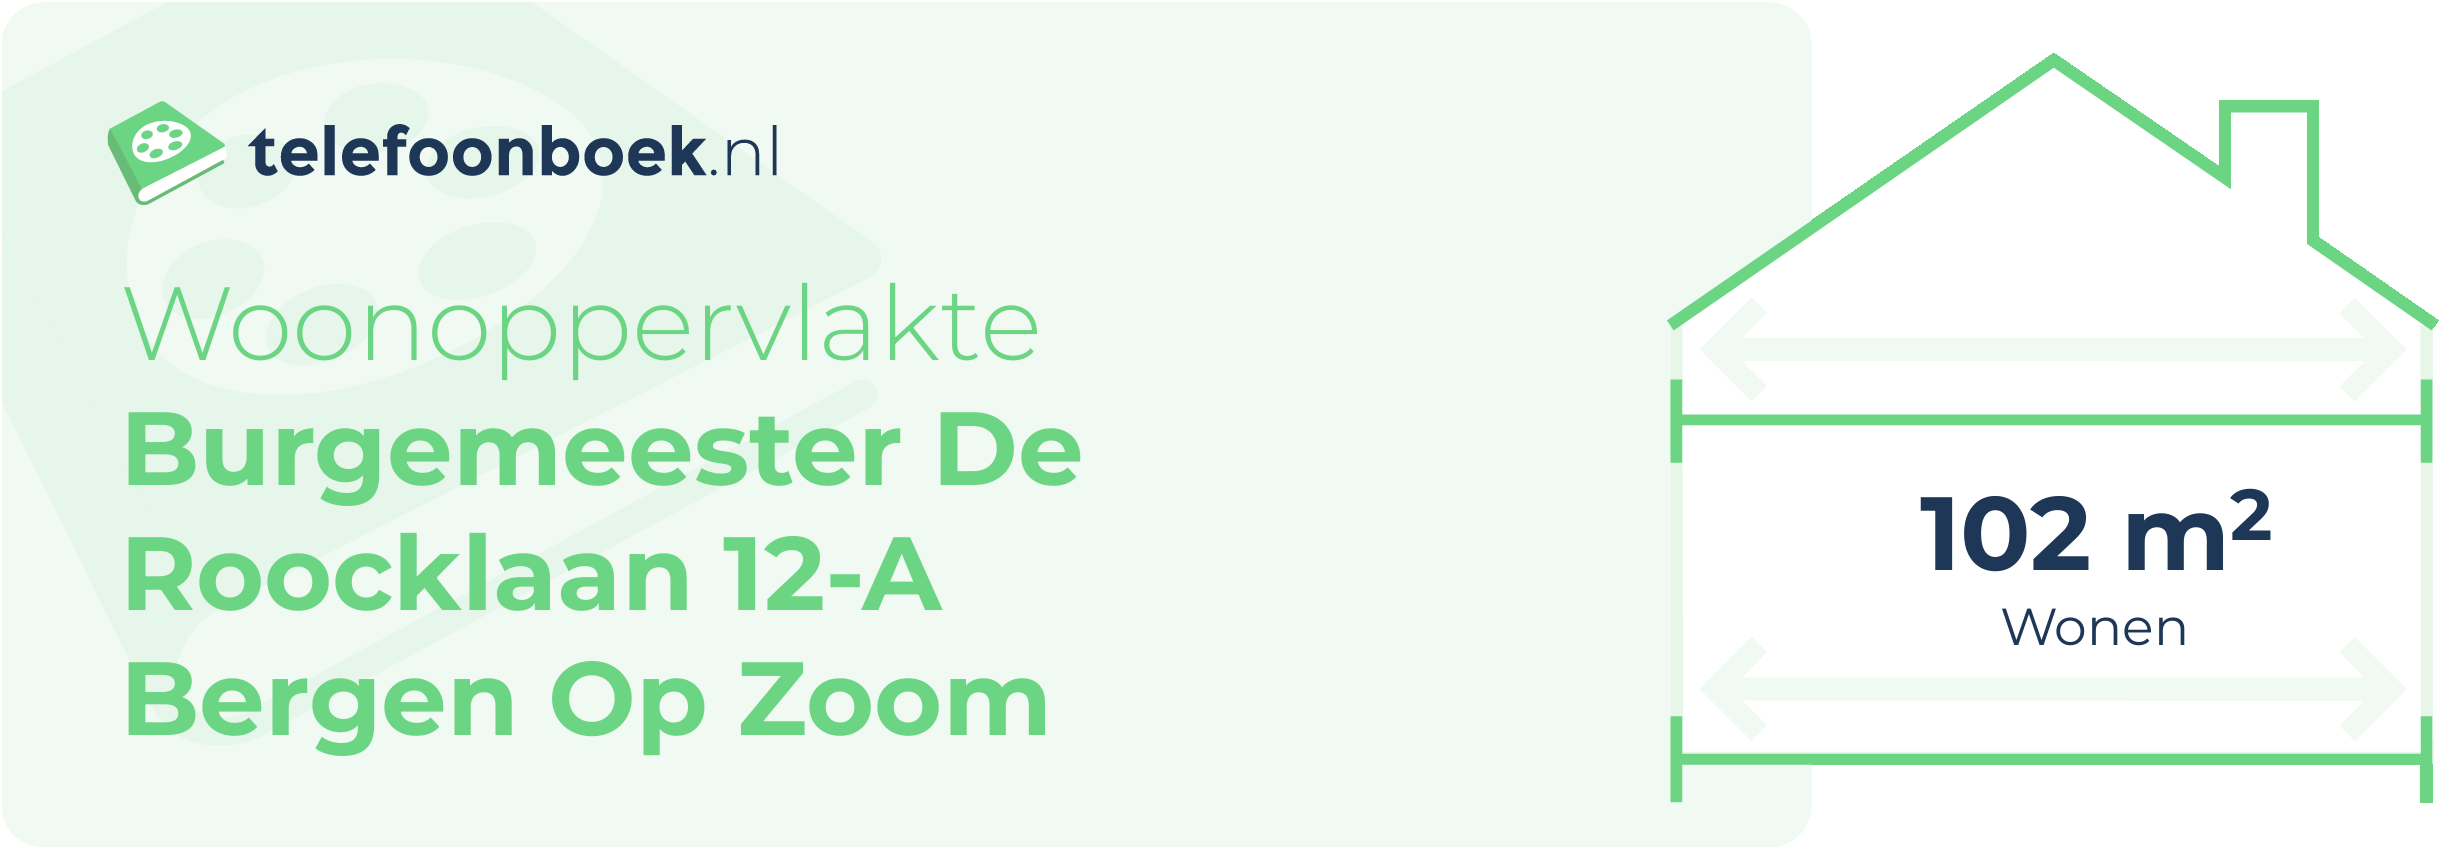 Woonoppervlakte Burgemeester De Roocklaan 12-A Bergen Op Zoom